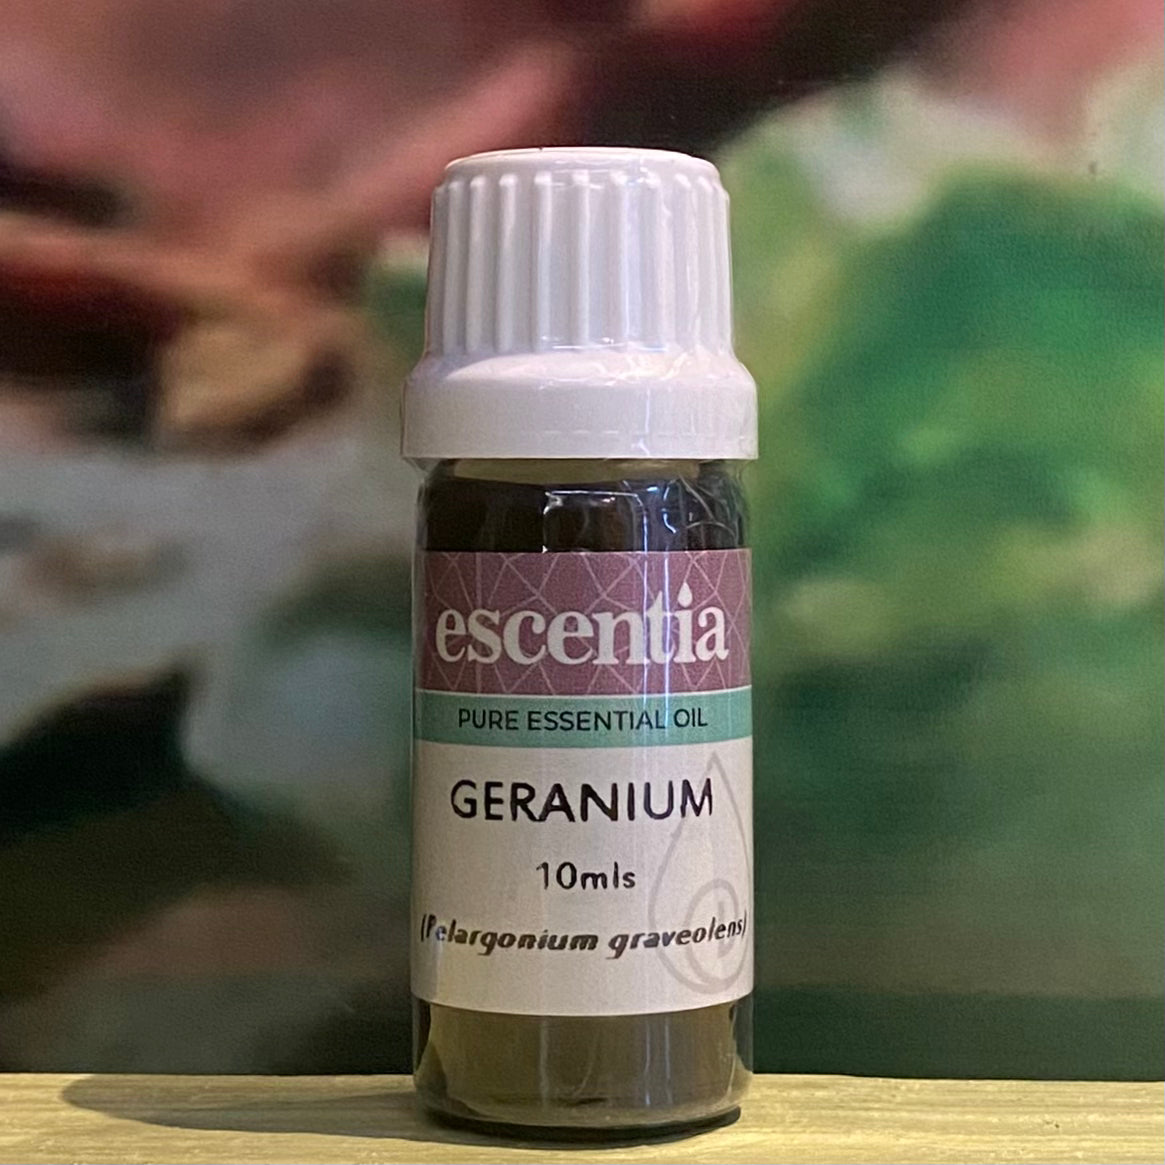 Escentia Geranium essential oil 10ml